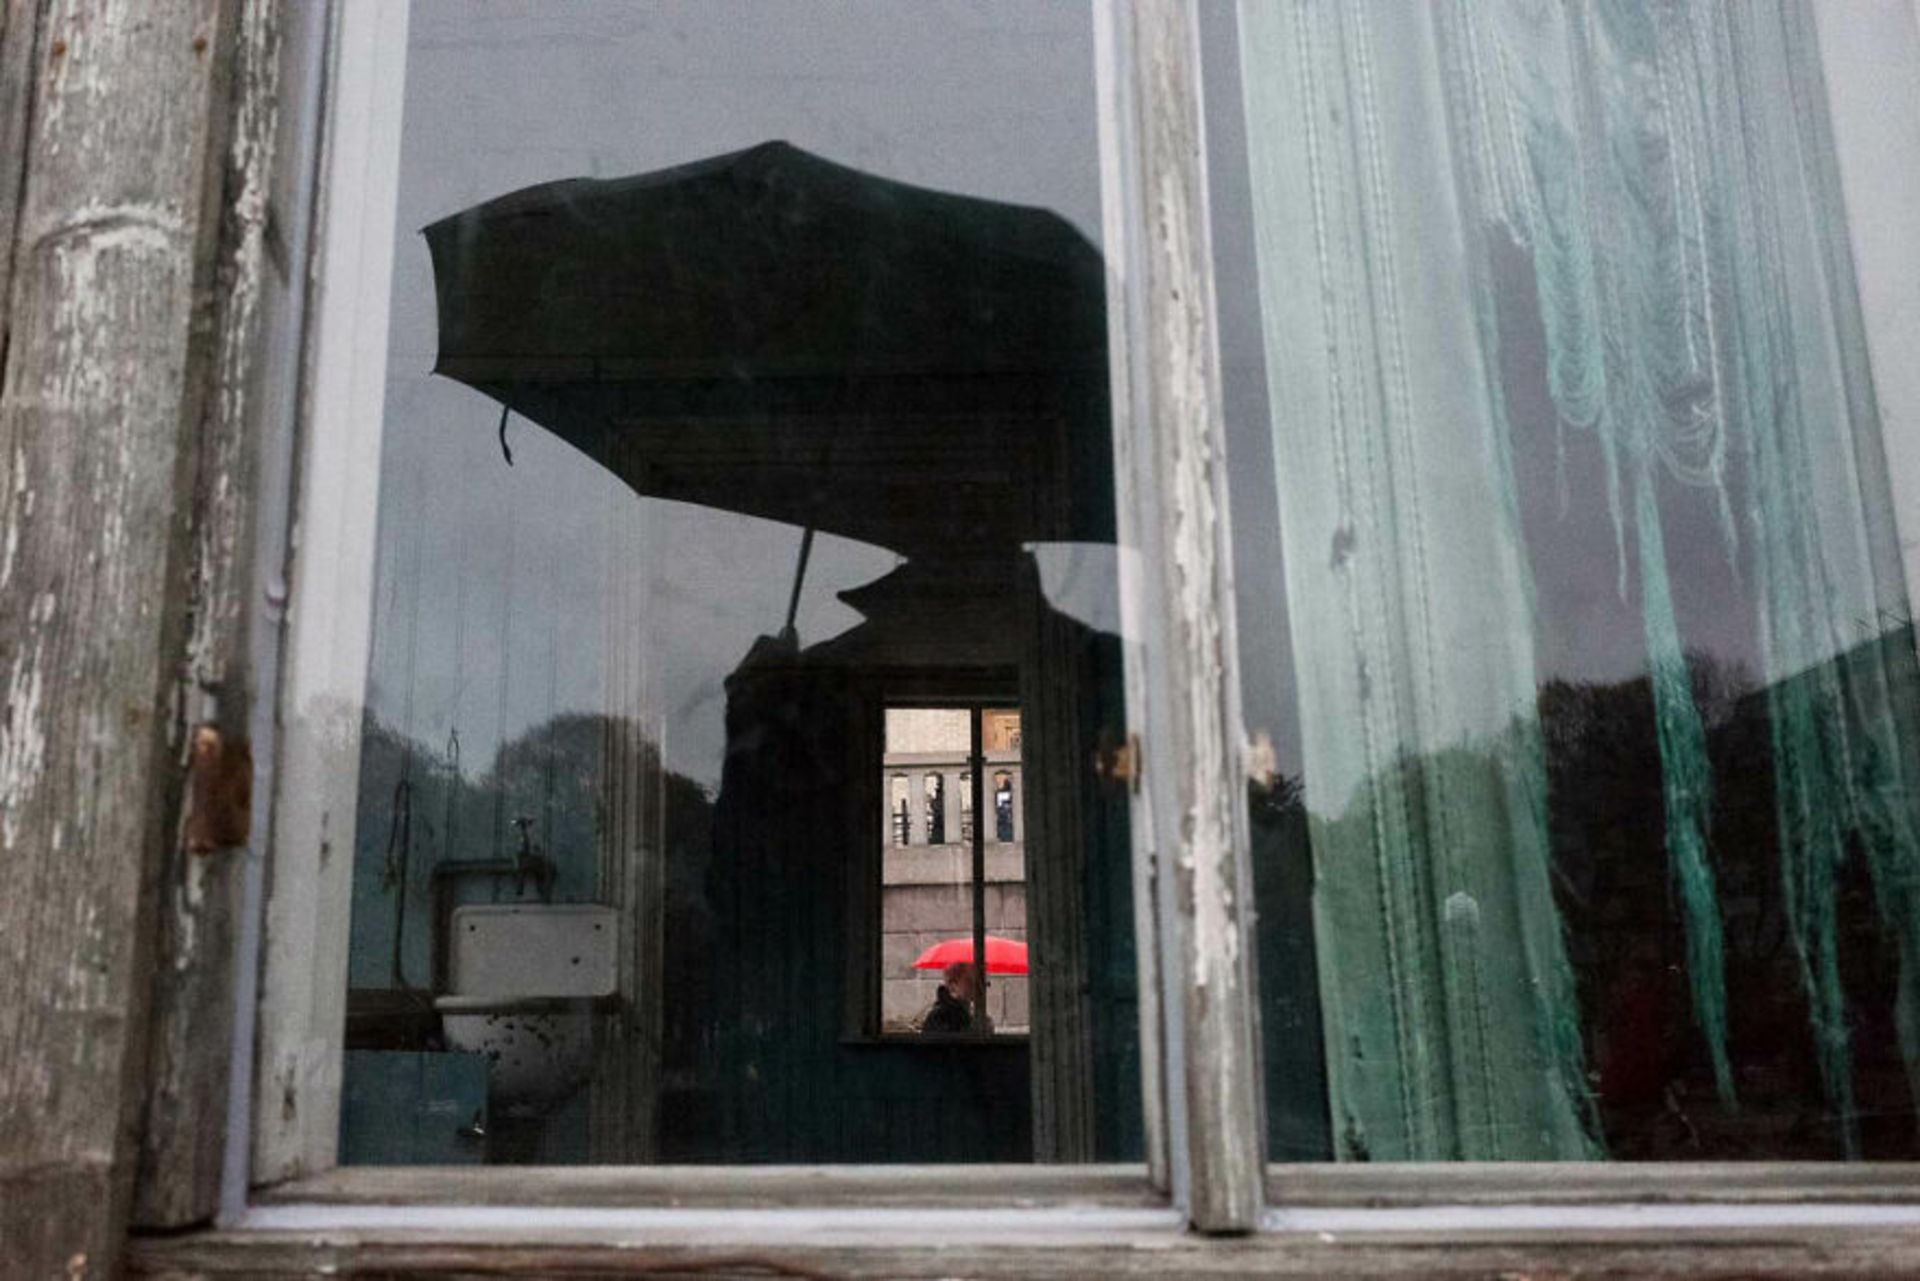 سایه مرد با چتر در پنجره و مردی با چتر قرمز